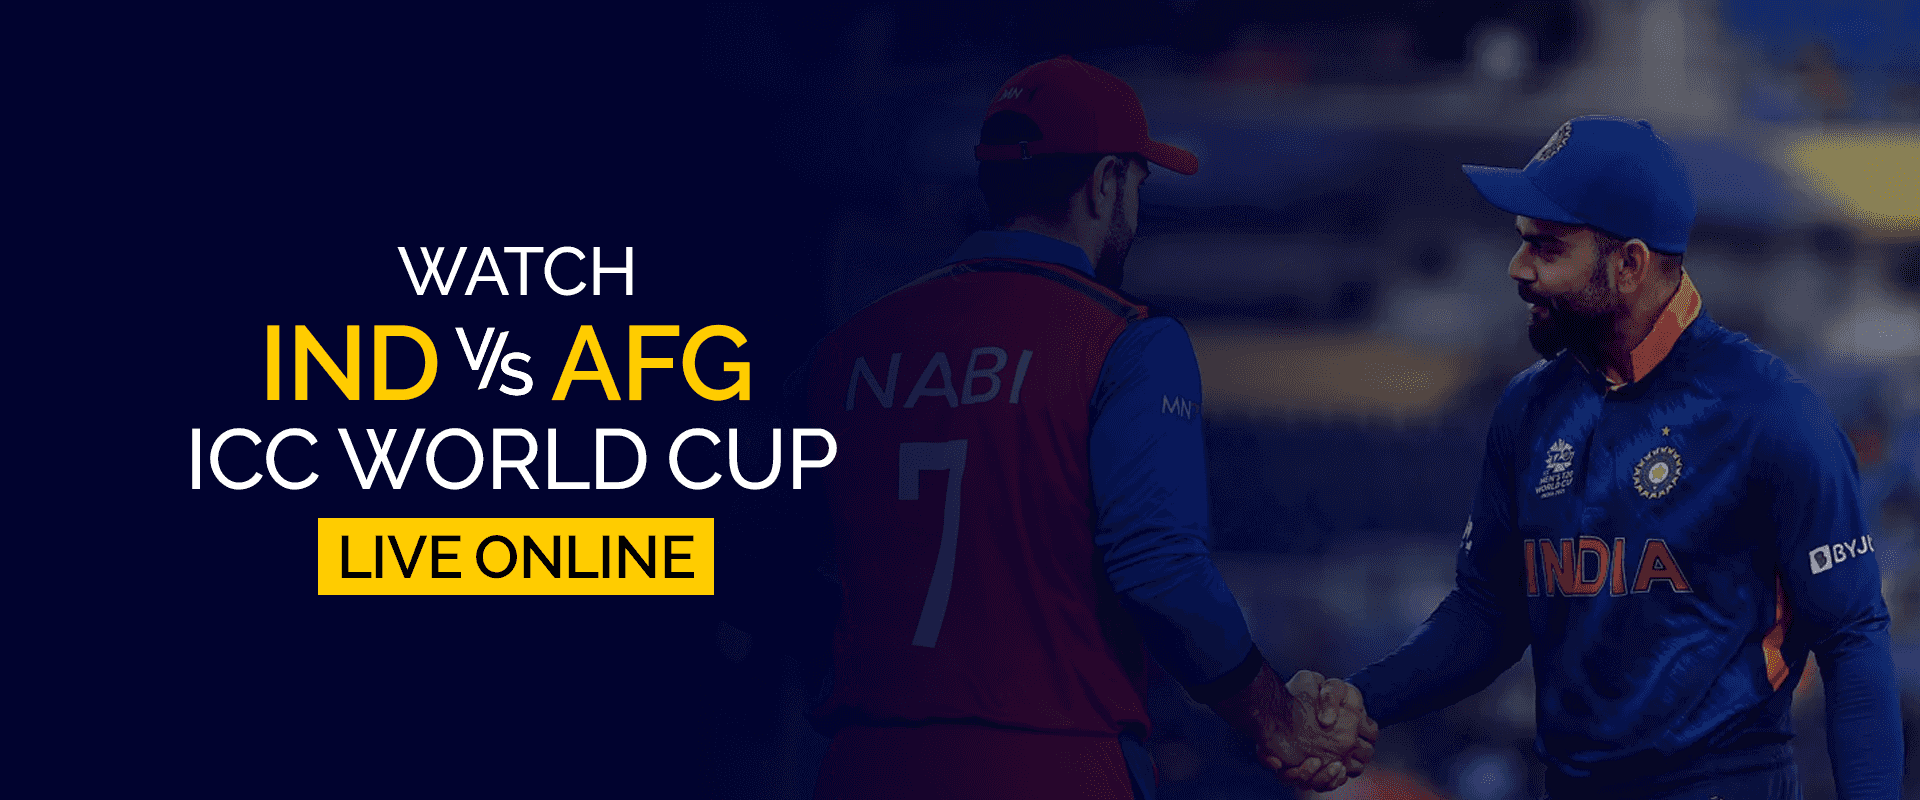 Vea la Copa Mundial IND vs AFG ICC en vivo en línea